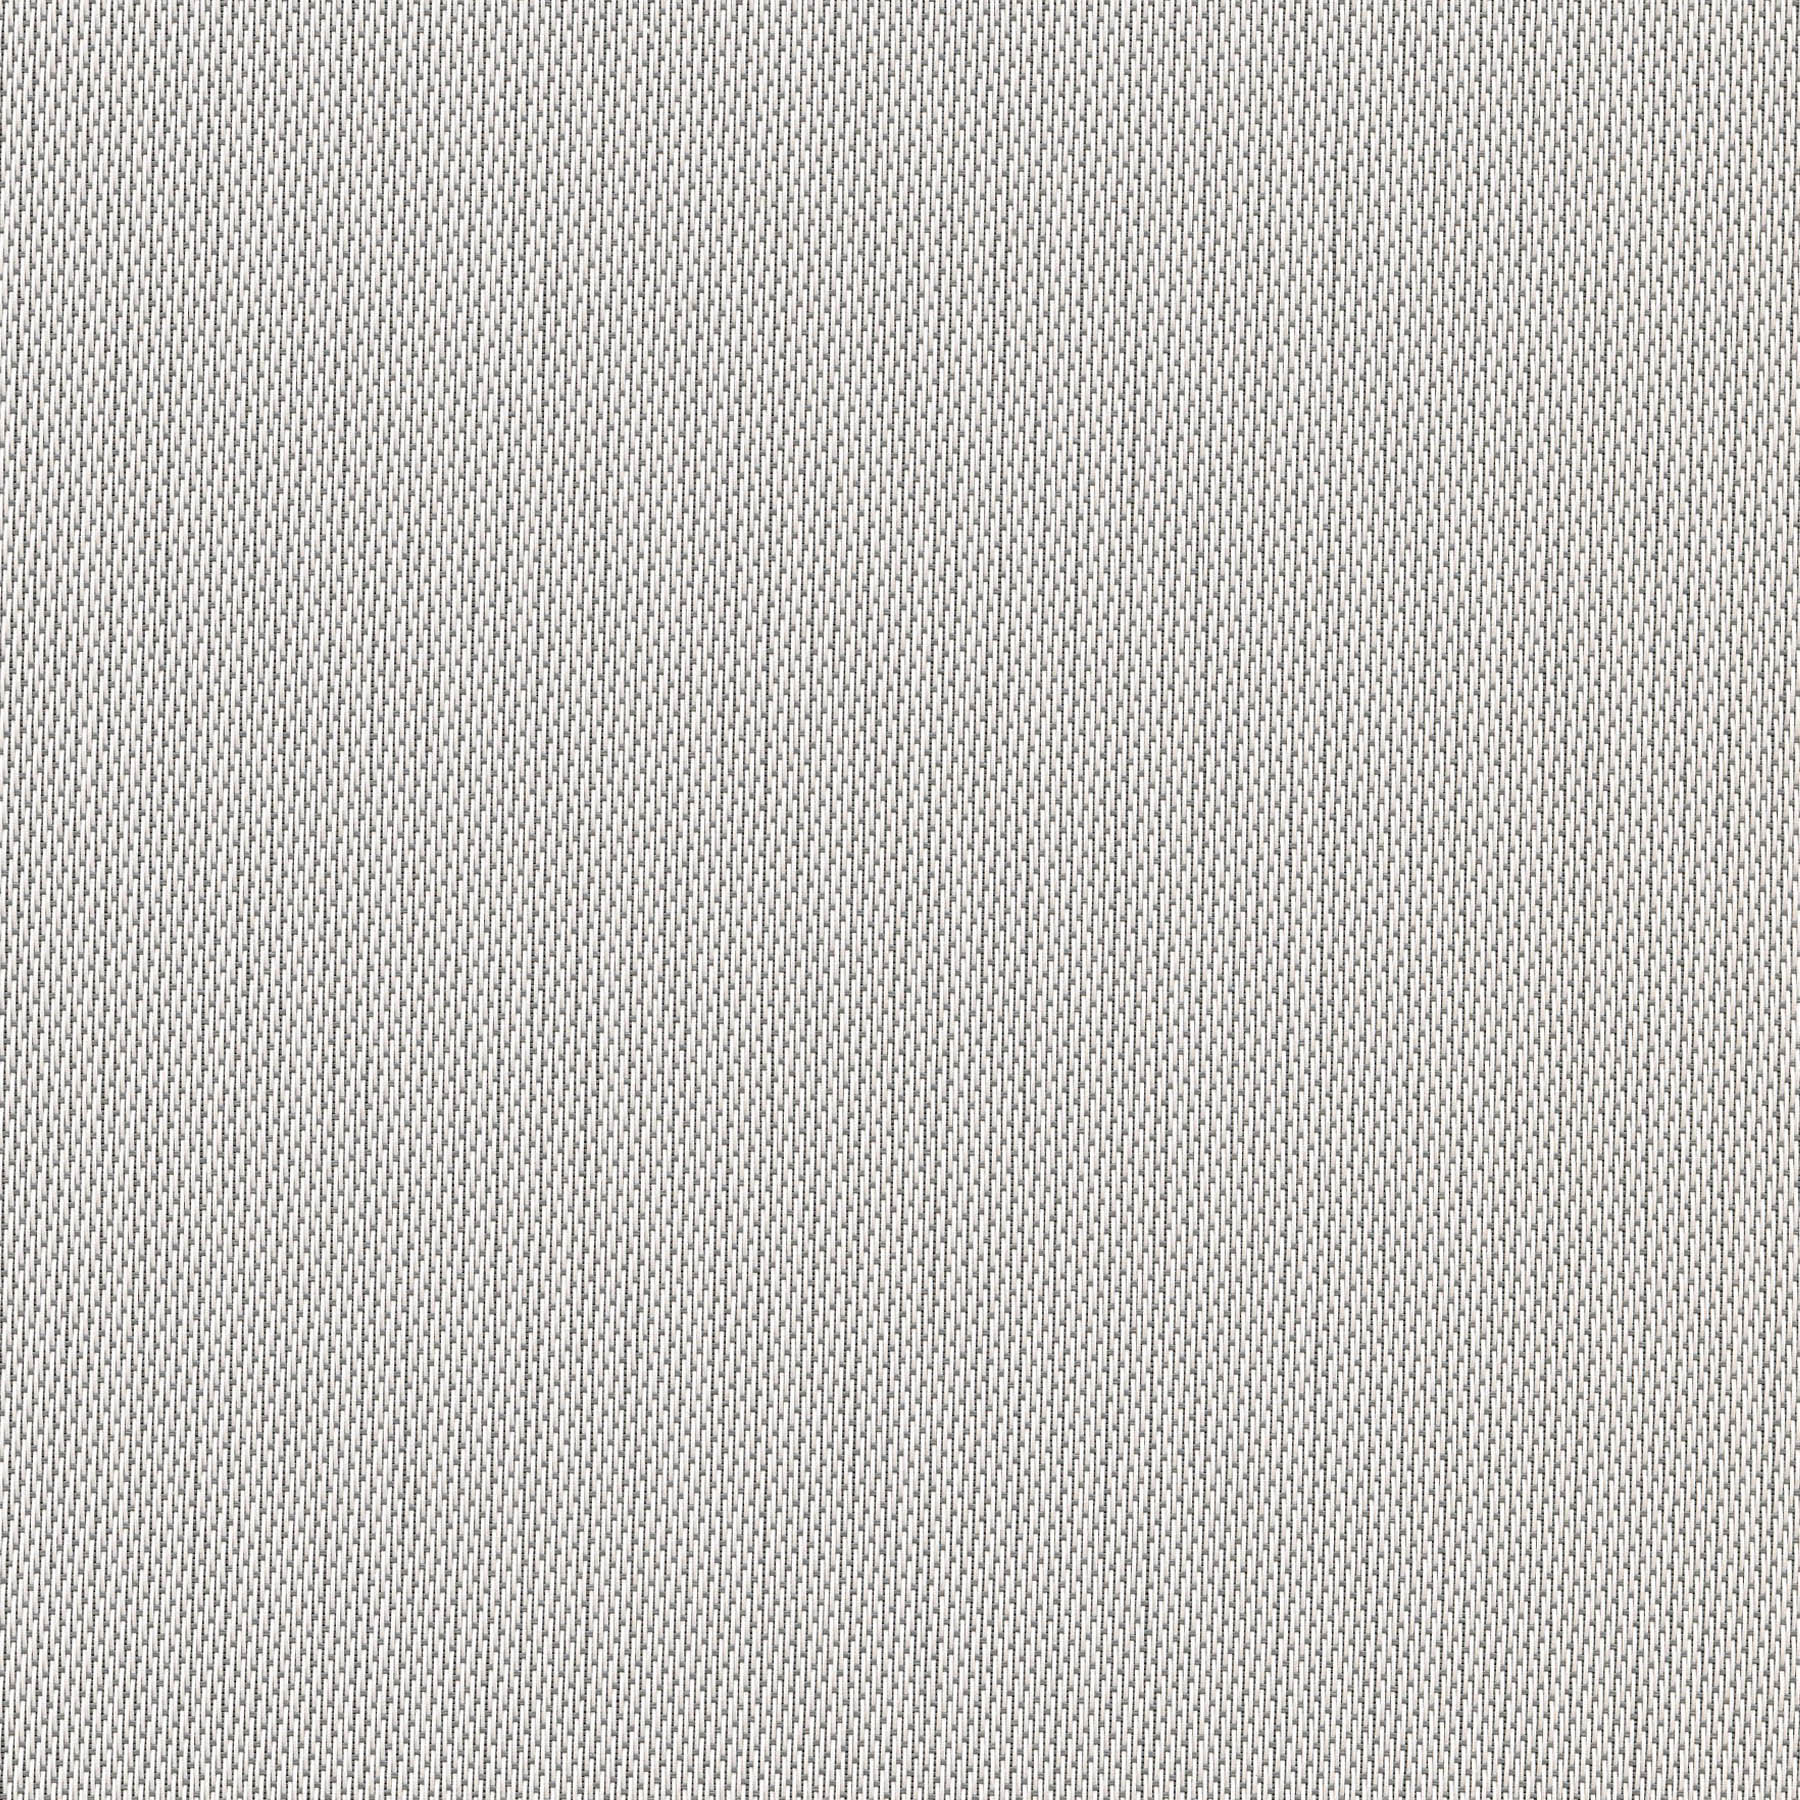 Altex - Tissu - SHEERWEAVE 2701 - Gris/Blanc - 153